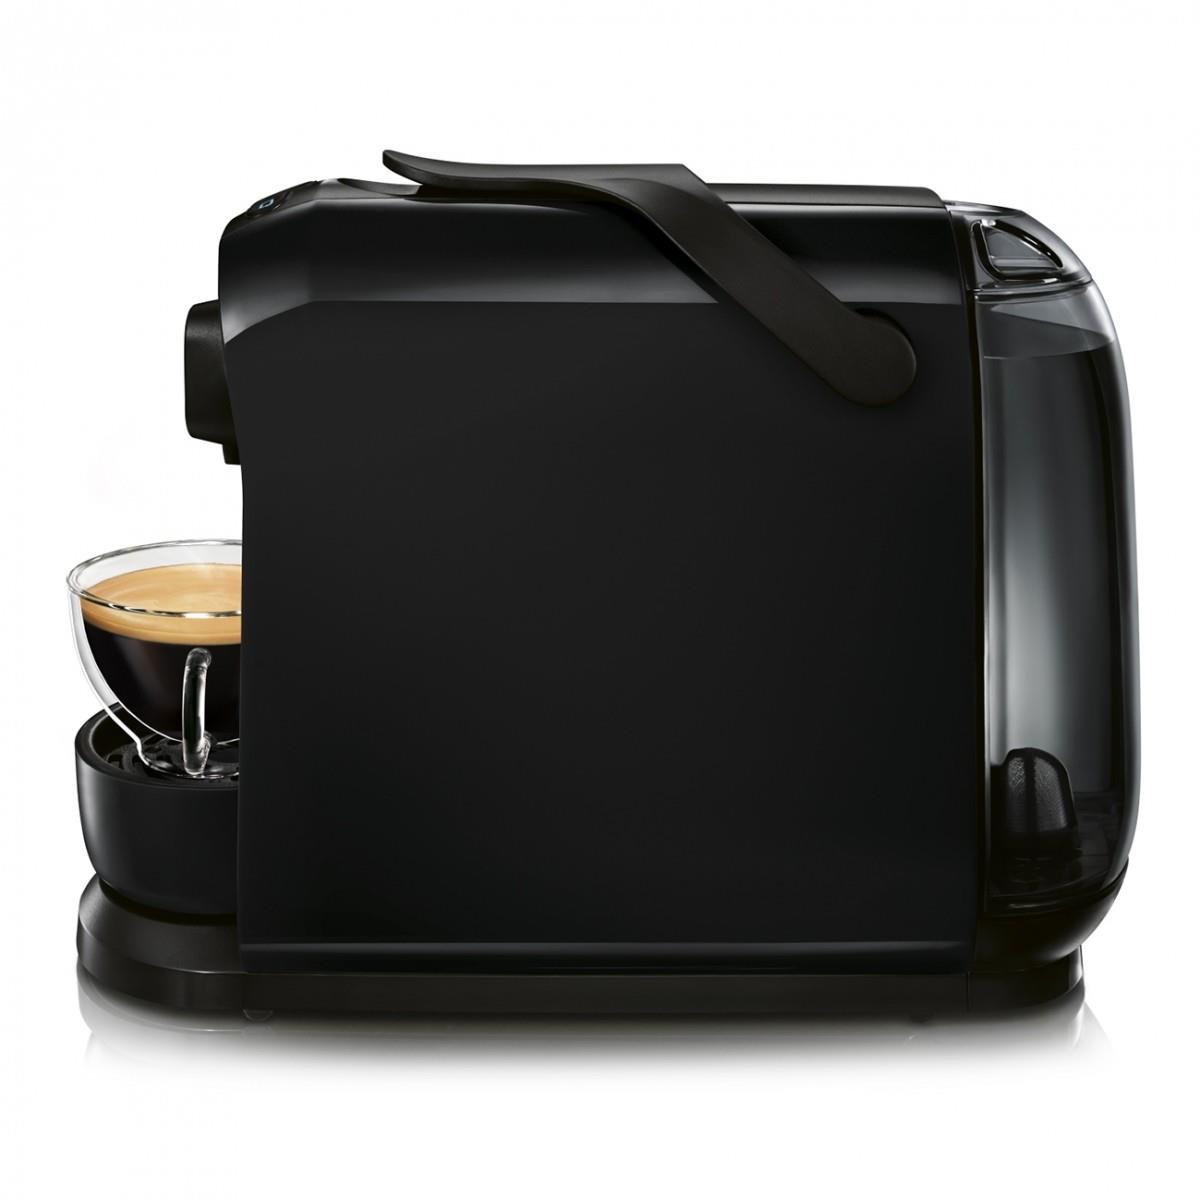 Kávovar na kapsle Tchibo Cafissimo PURE Countertop Pod coffee machine 1 L |  AB-COM.cz